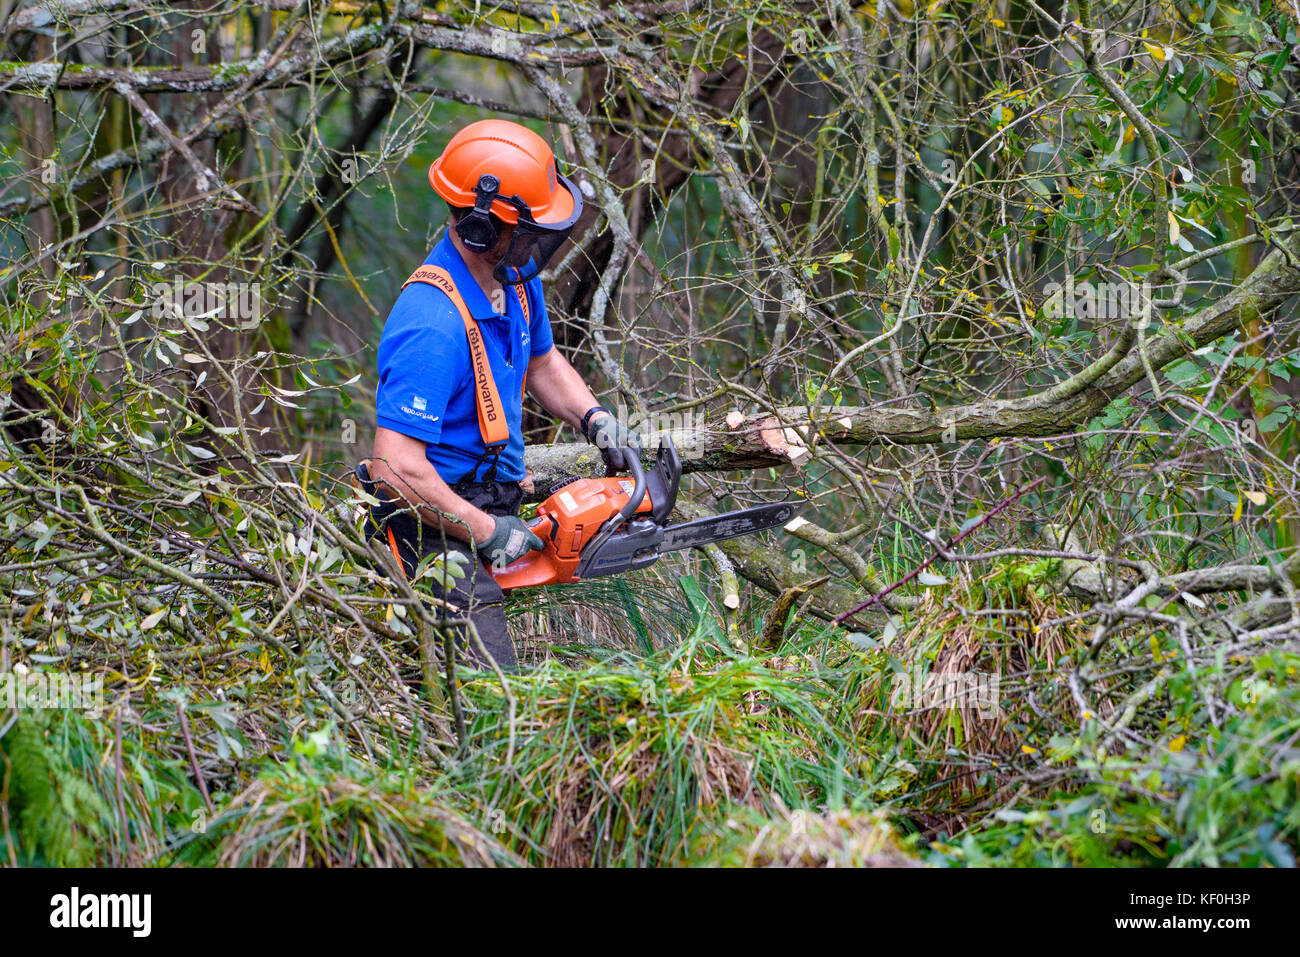 L'homme à l'aide d'une tronçonneuse Husqvarna pour éclaircir un bois, RSPB Leighton Moss, Silverdale, Carnforth, Lancashire. Banque D'Images